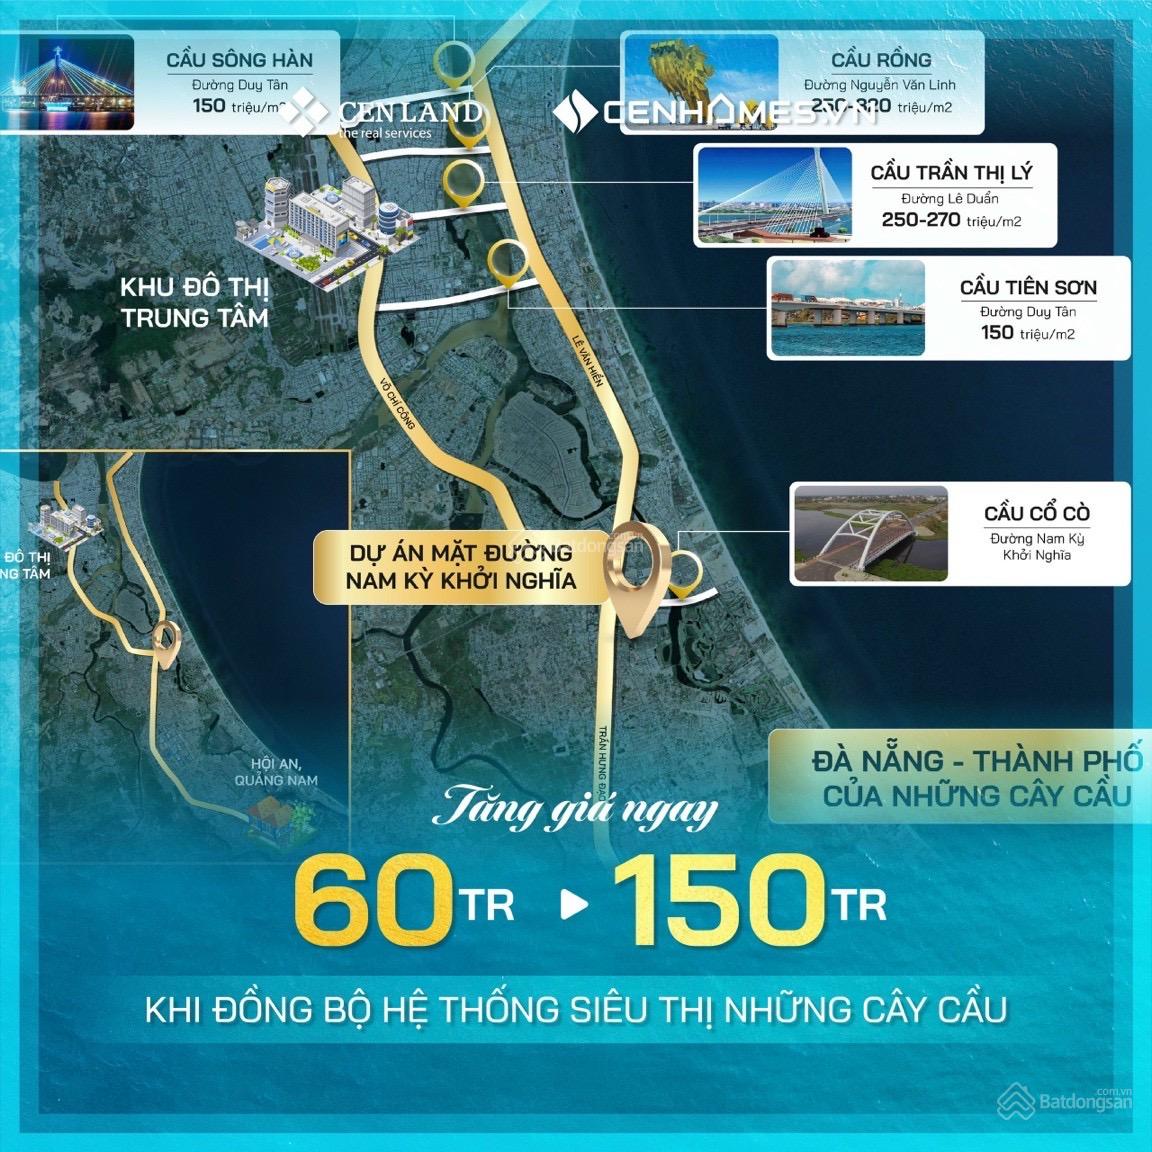 Hot 12 lô đất nền mặt đường Nam Kỳ Khởi Nghĩa - Vị trí vàng trung tâm mới Tp Đà Nẵng chỉ từ 59tr/m2